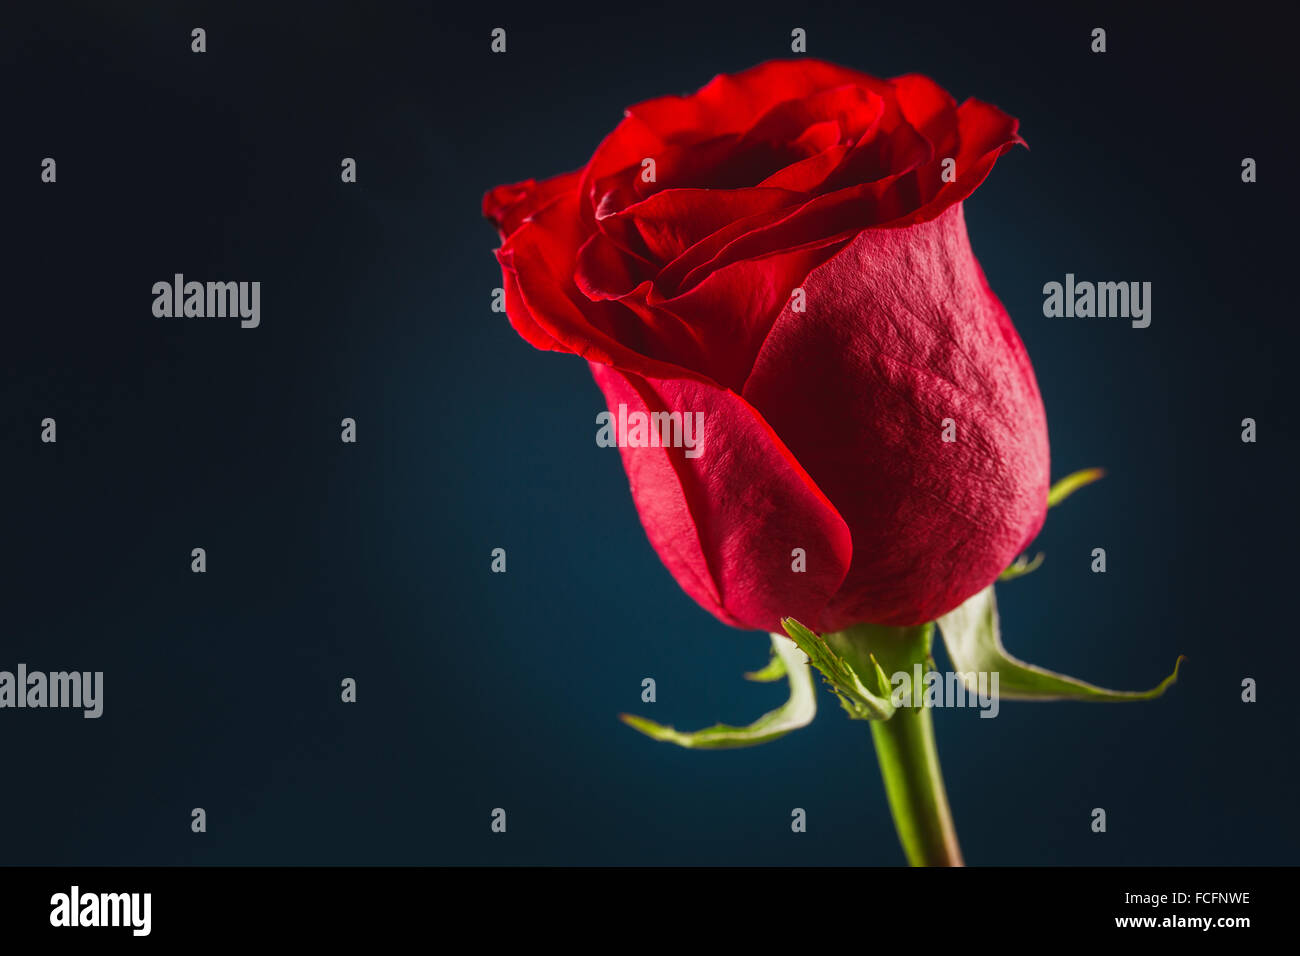 Bella rosa rossa immagini e fotografie stock ad alta risoluzione - Alamy